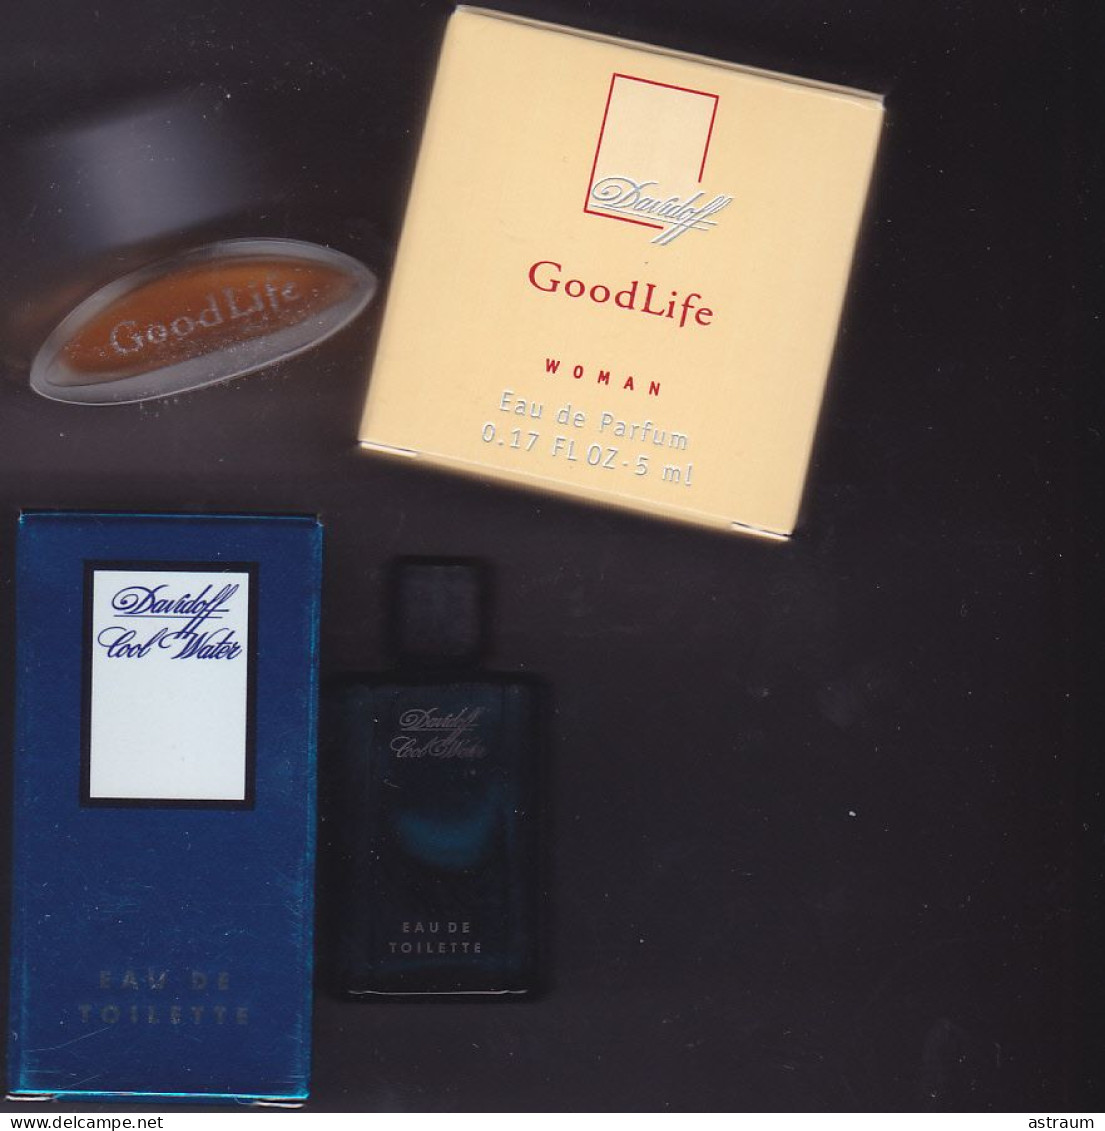 Lot 2 Miniature De Parfum - Zino Davidoff  -1 EDT + 1 EDP -  Pleine Avec Boite-voir Descriptif Ci Dessous - Miniatures Femmes (avec Boite)